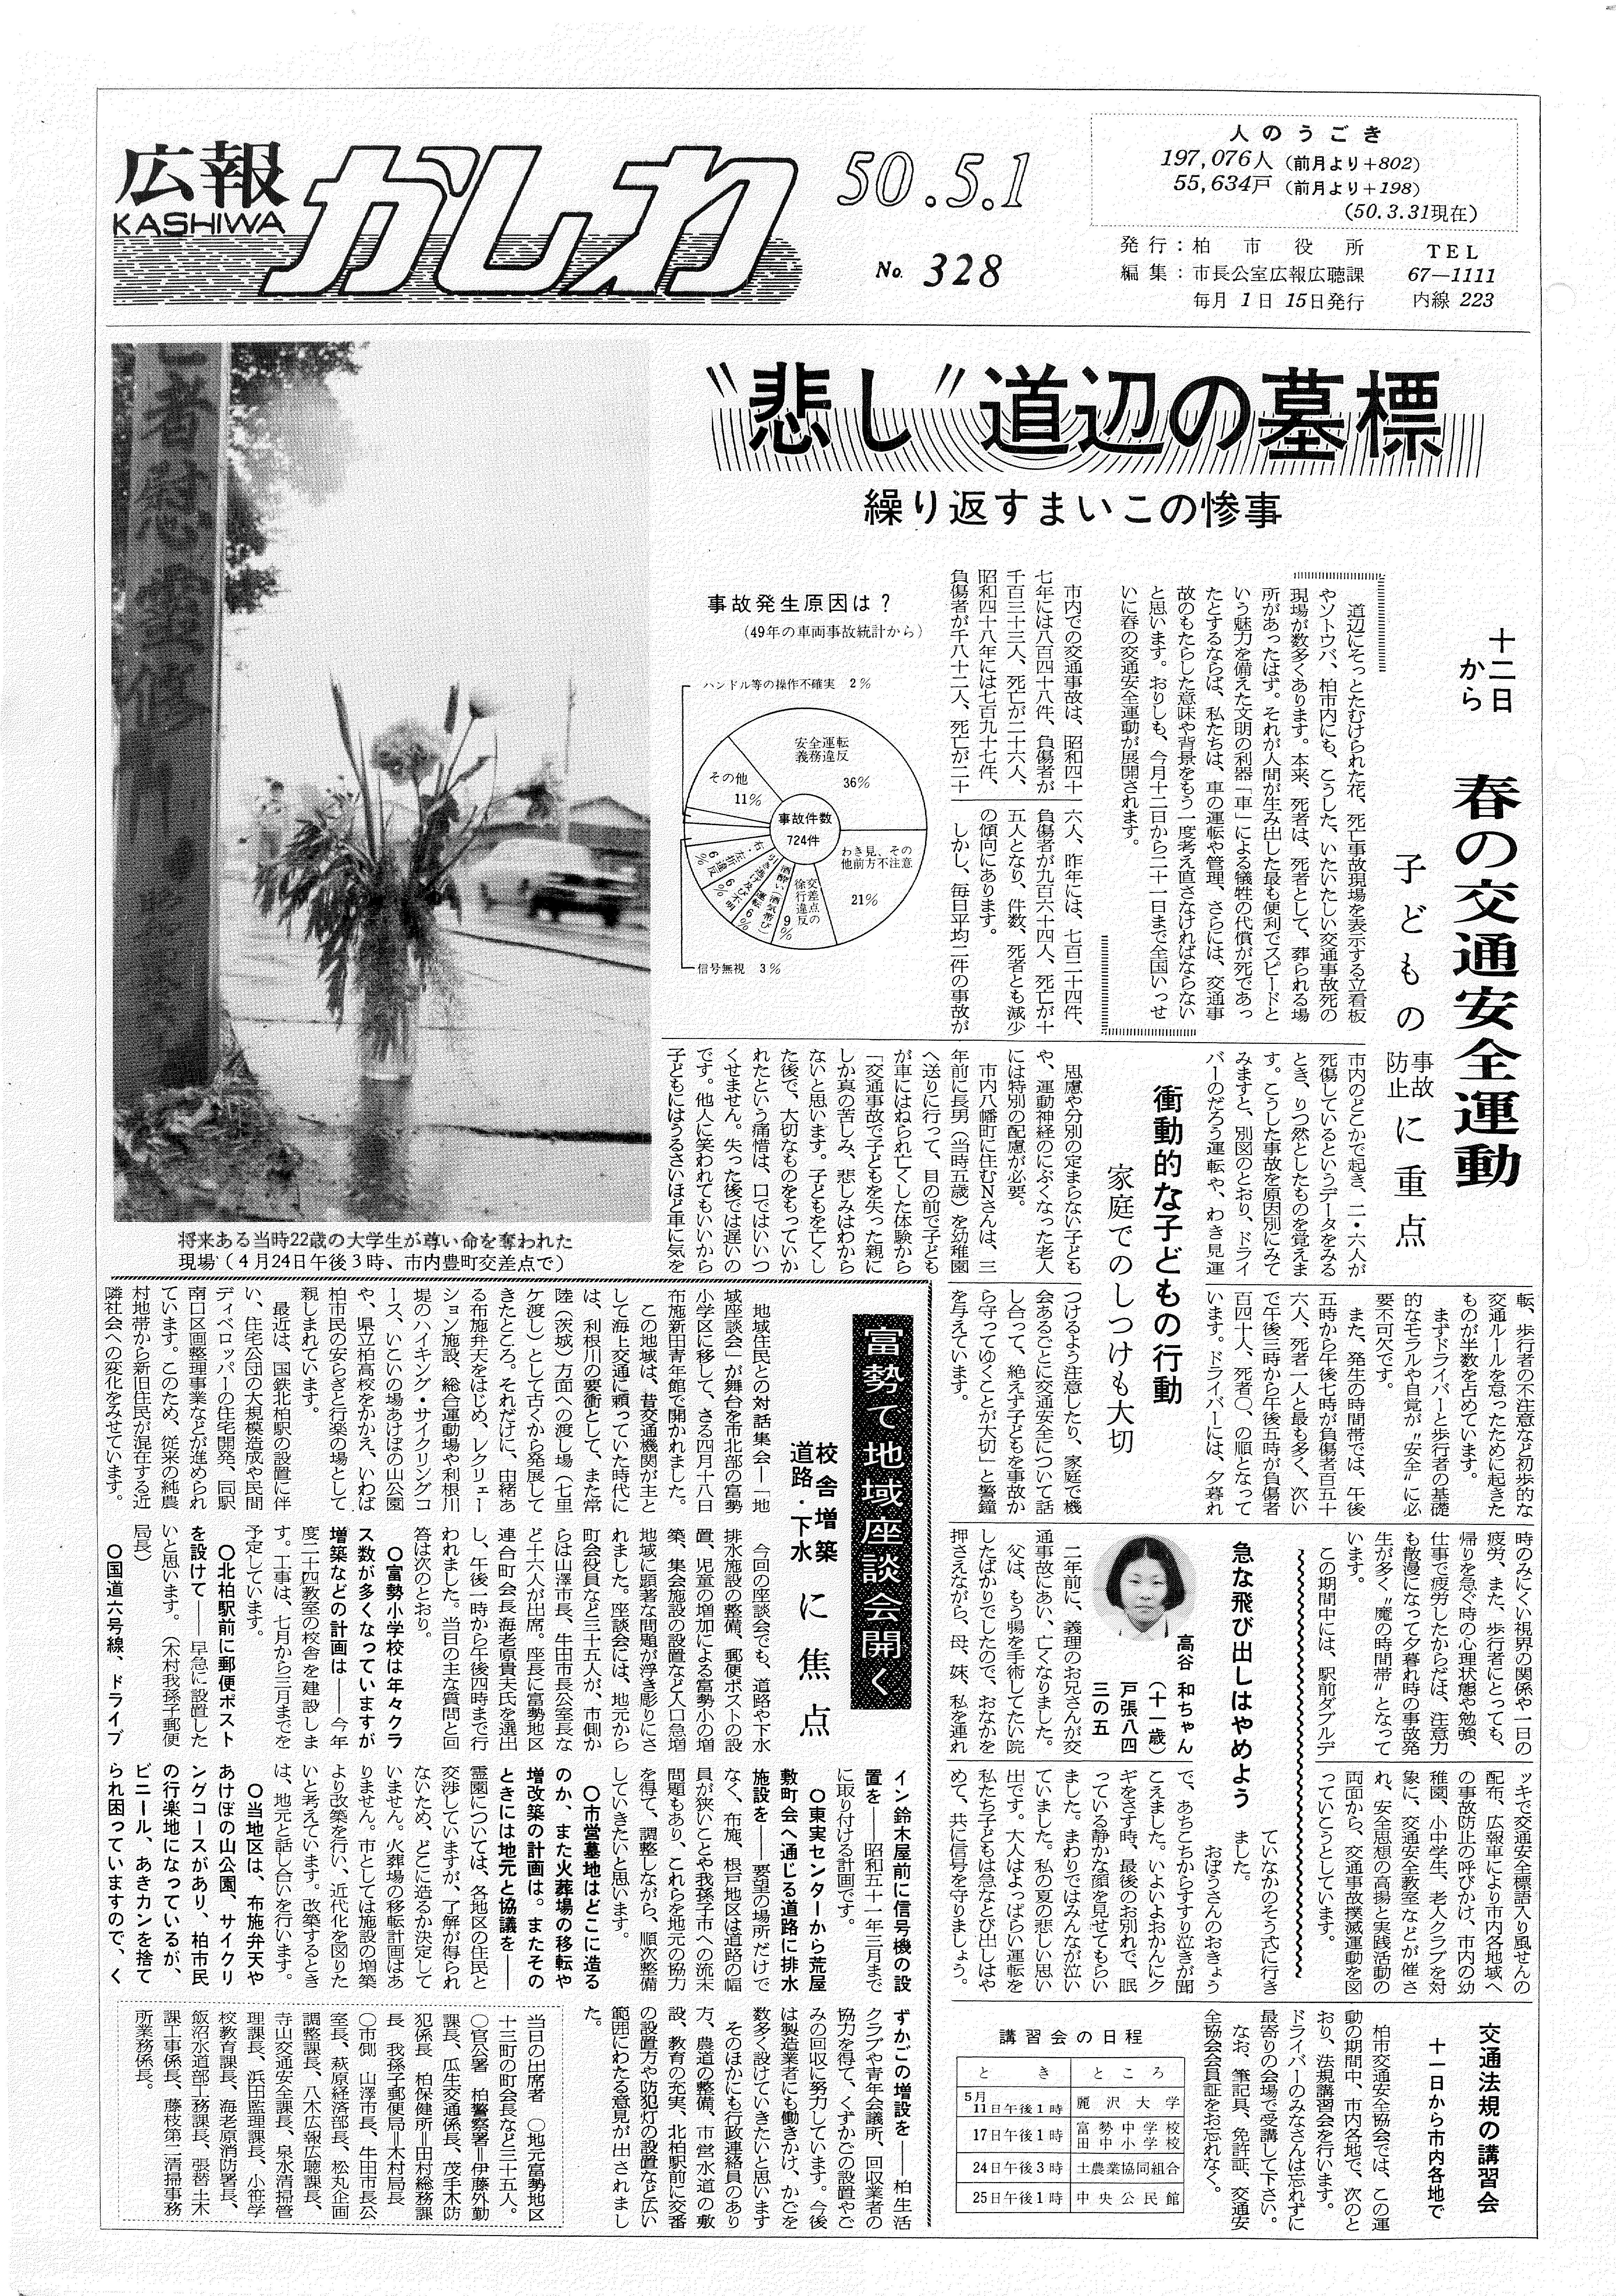 広報かしわ　昭和50年5月1日発行　328号